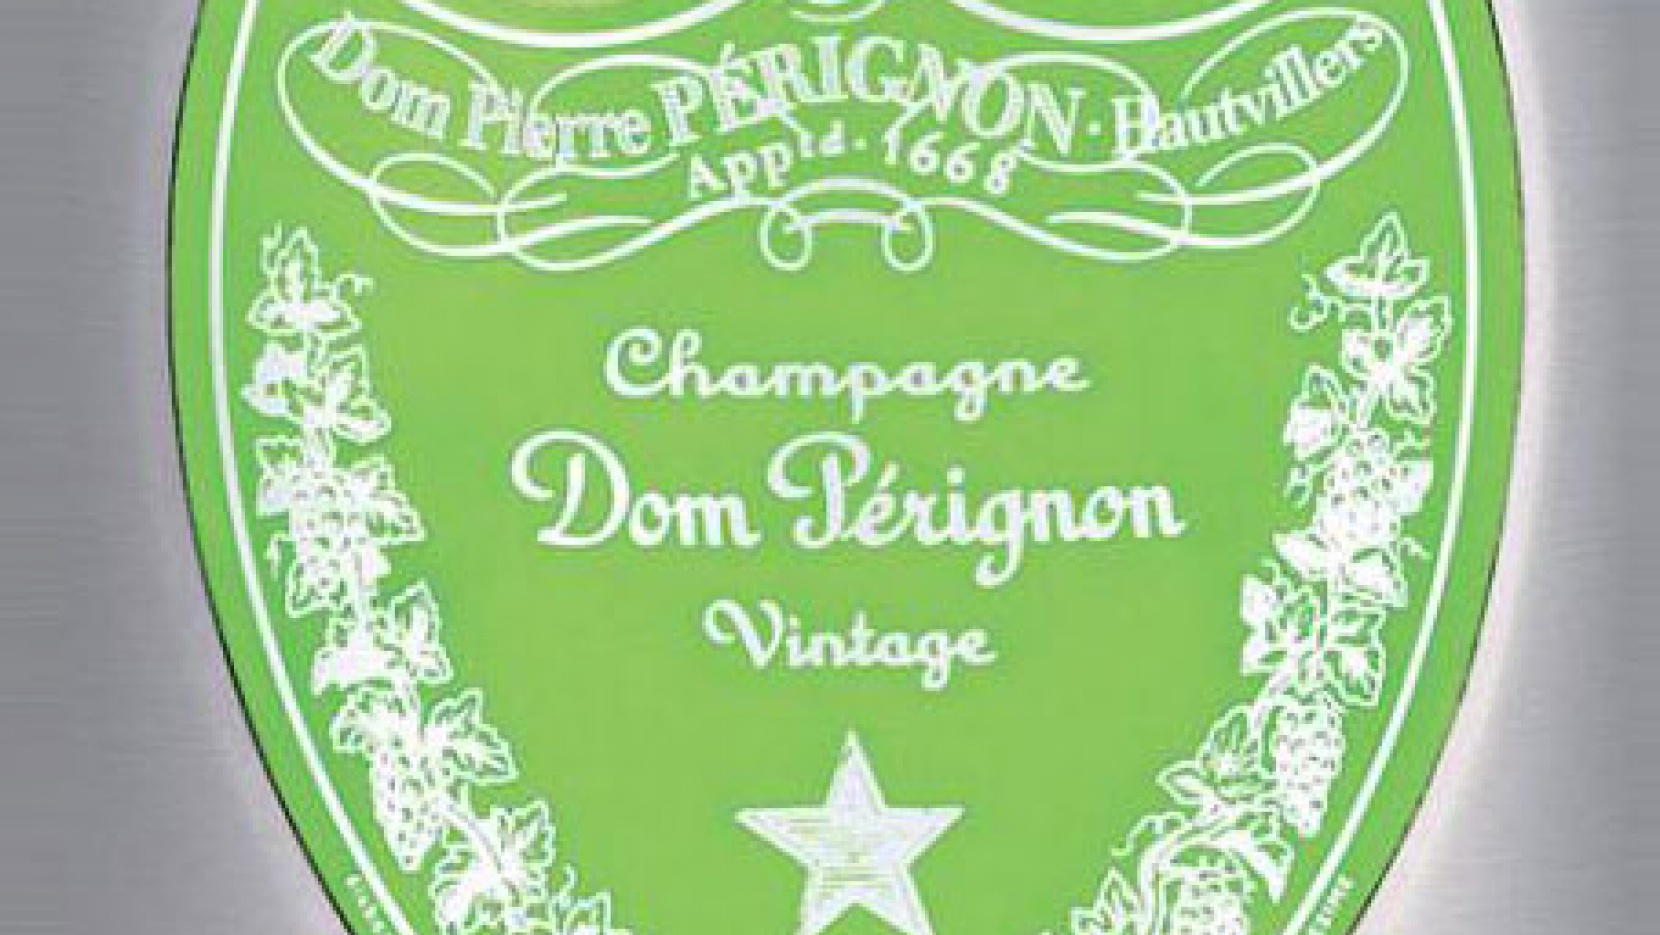 Dom Pérignon + Marc Newson (NOTCOT)